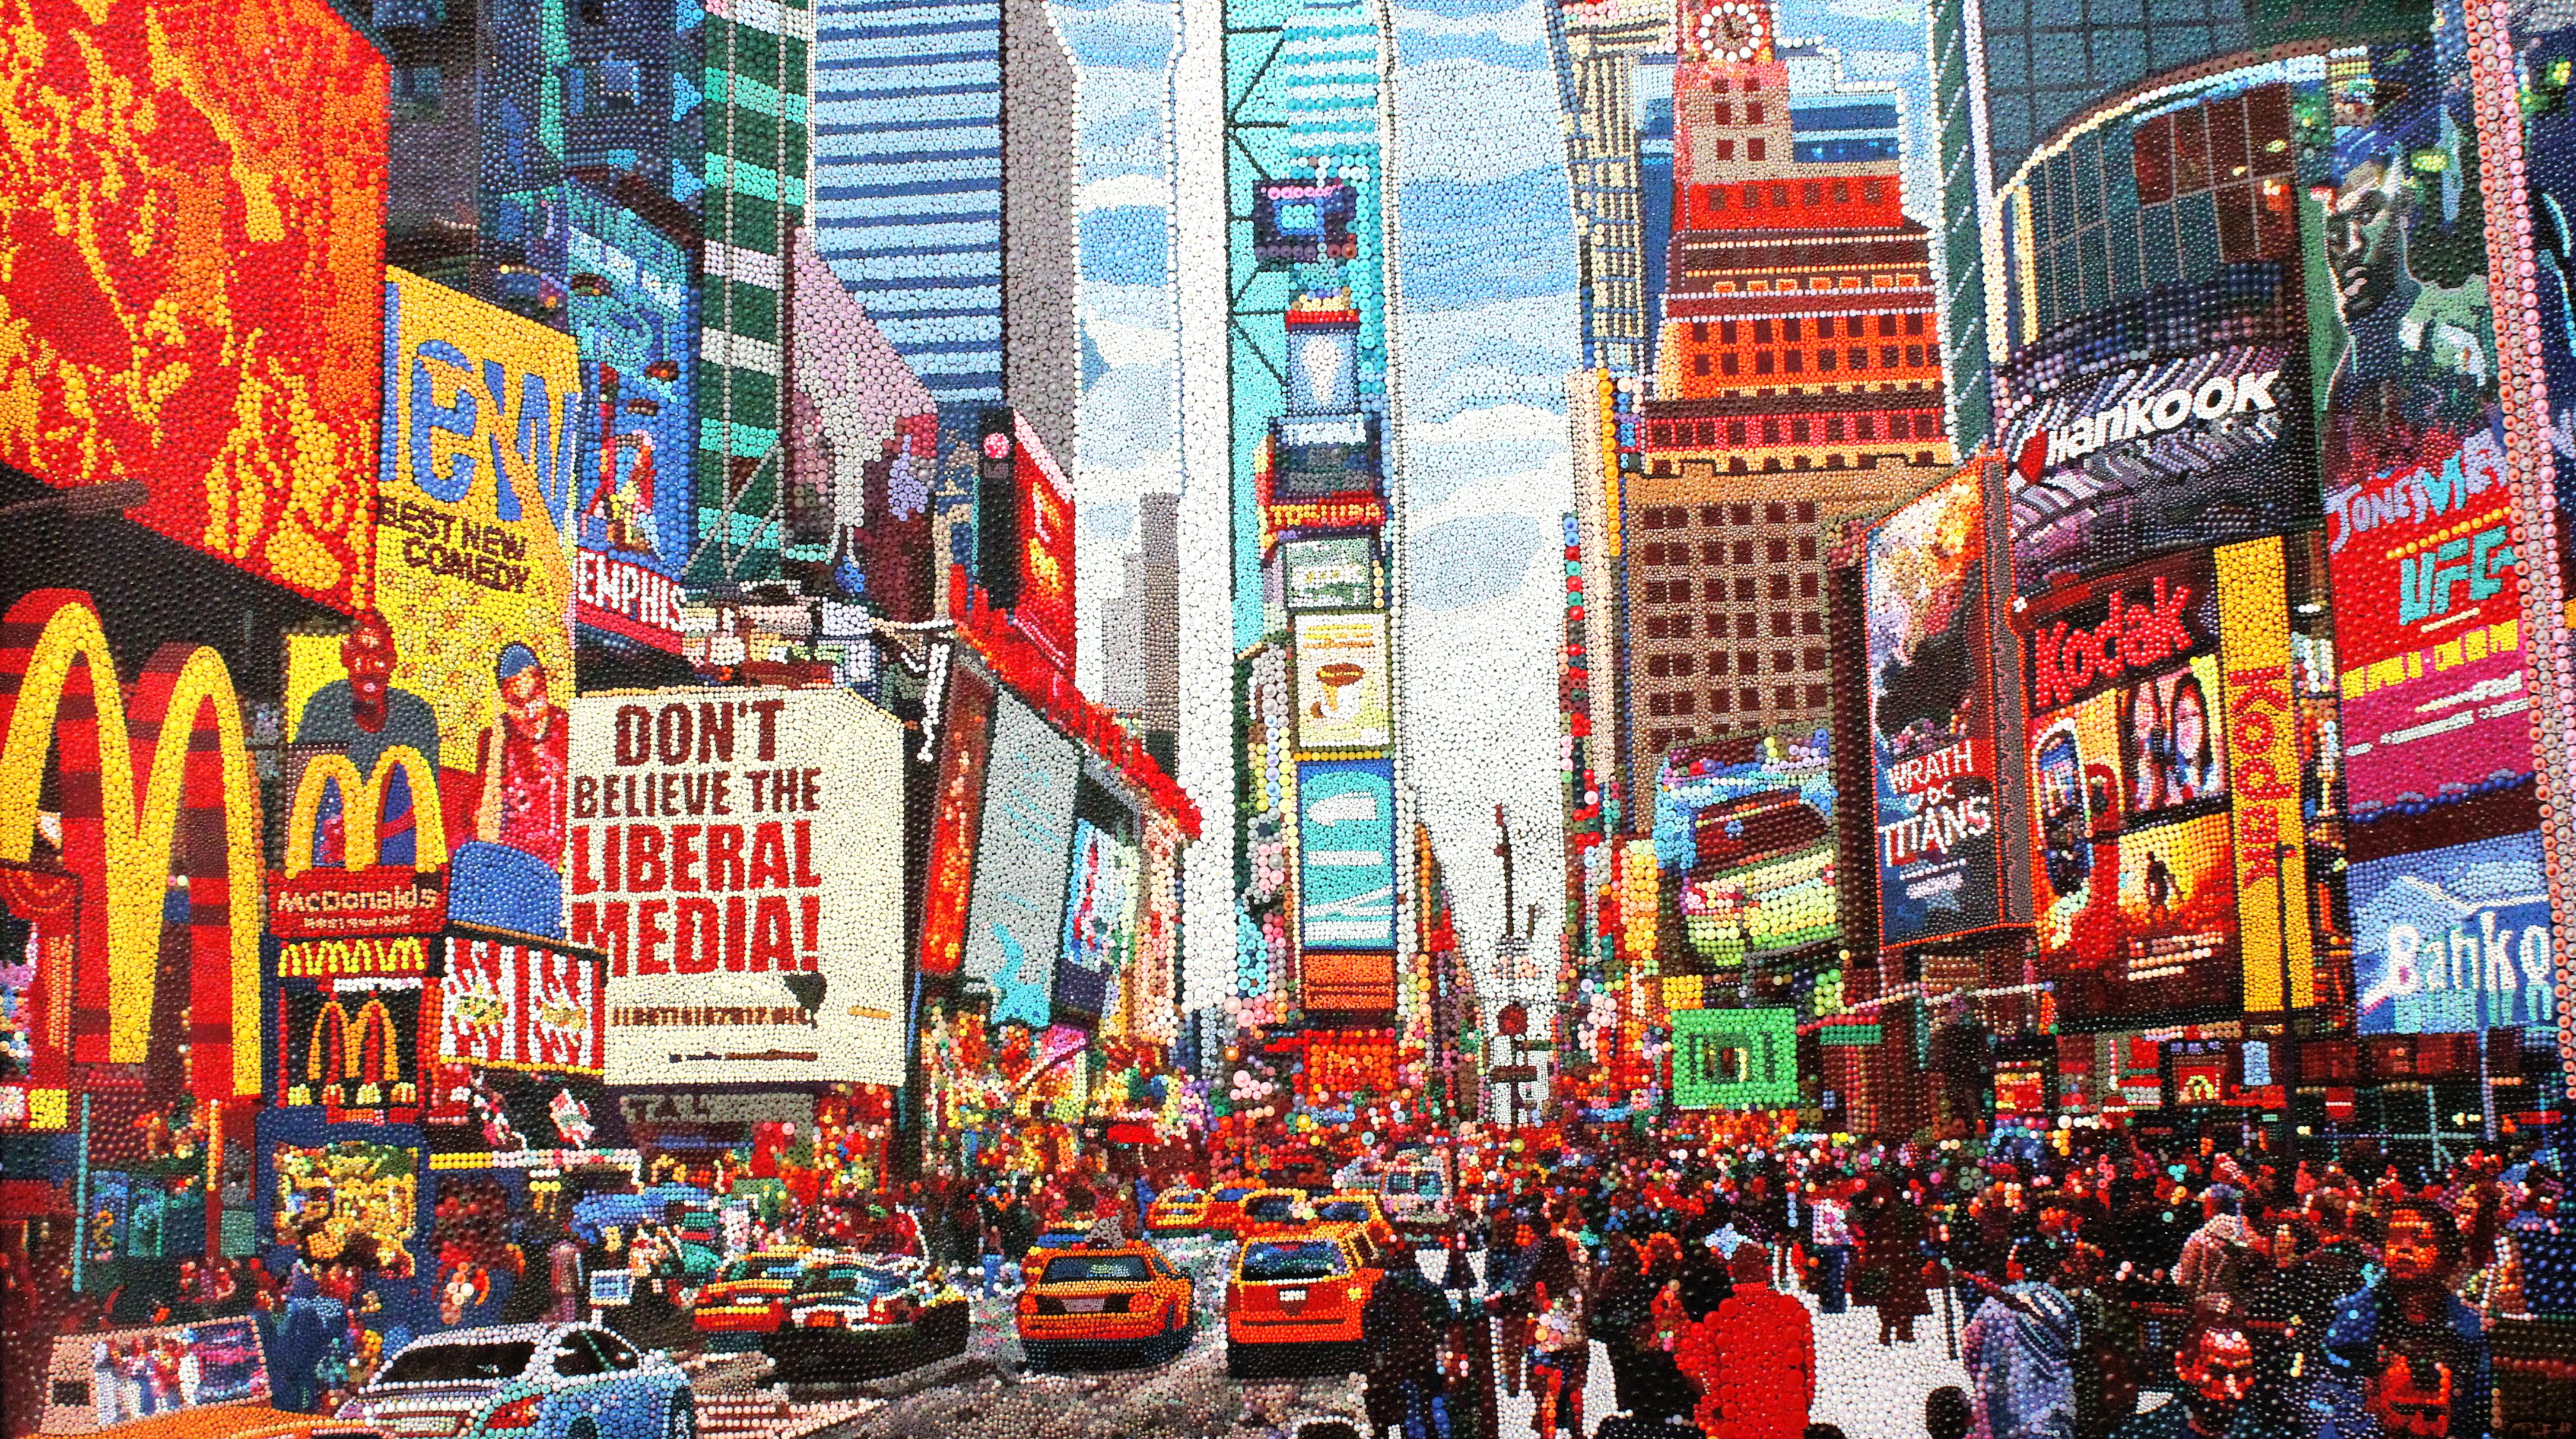 Times Square, acrylique sur toile - Mixed Media Art de Ophear 